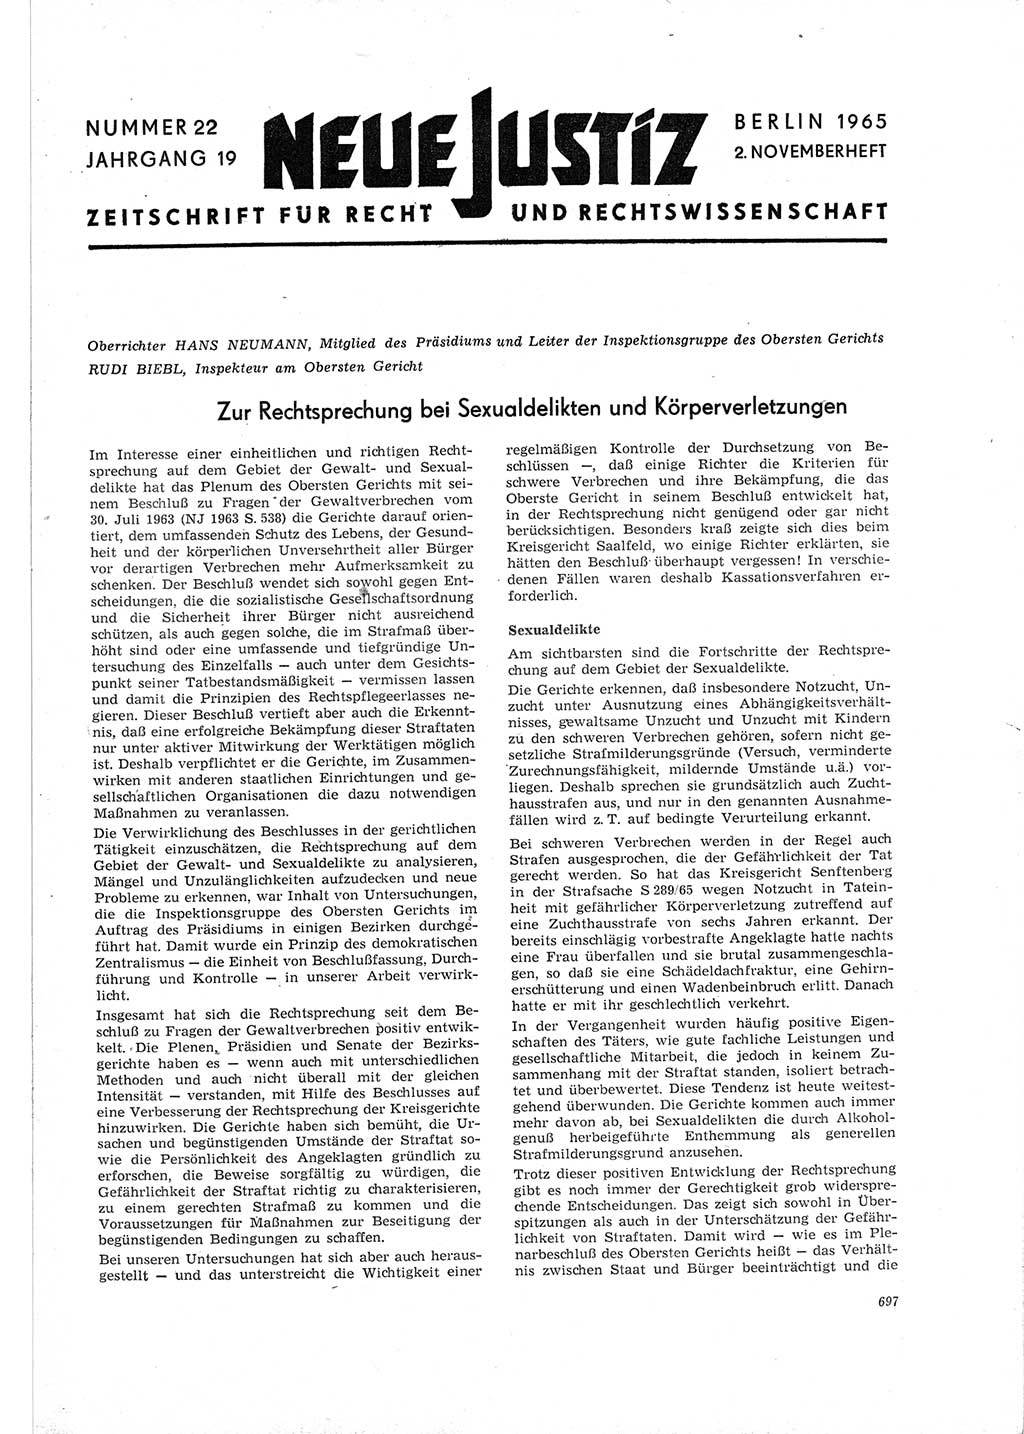 Neue Justiz (NJ), Zeitschrift für Recht und Rechtswissenschaft [Deutsche Demokratische Republik (DDR)], 19. Jahrgang 1965, Seite 697 (NJ DDR 1965, S. 697)